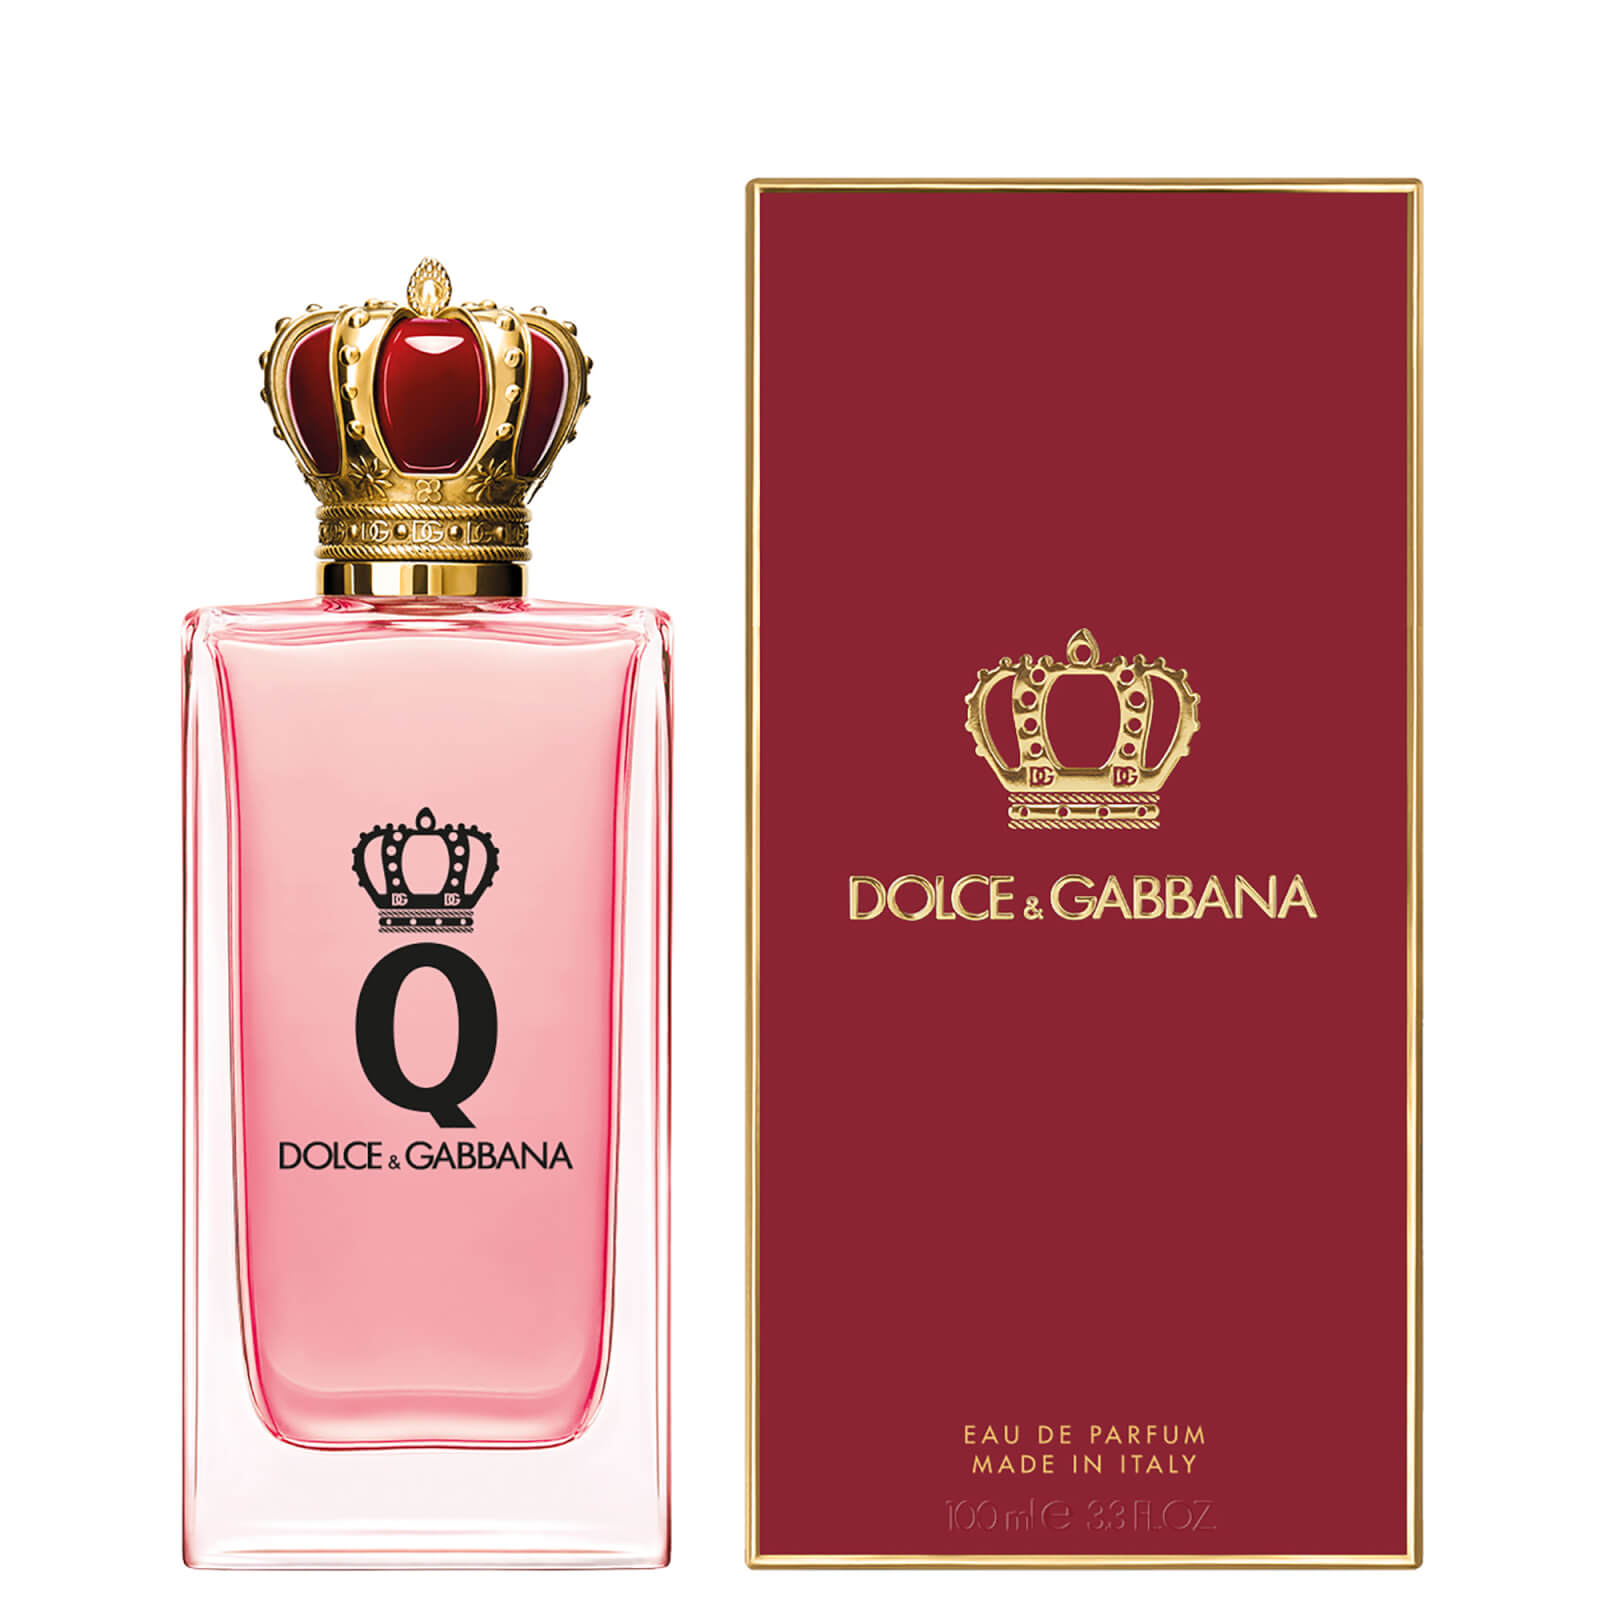 Dolce&Gabbana Q Eau de Parfum 100ml von Dolce&Gabbana